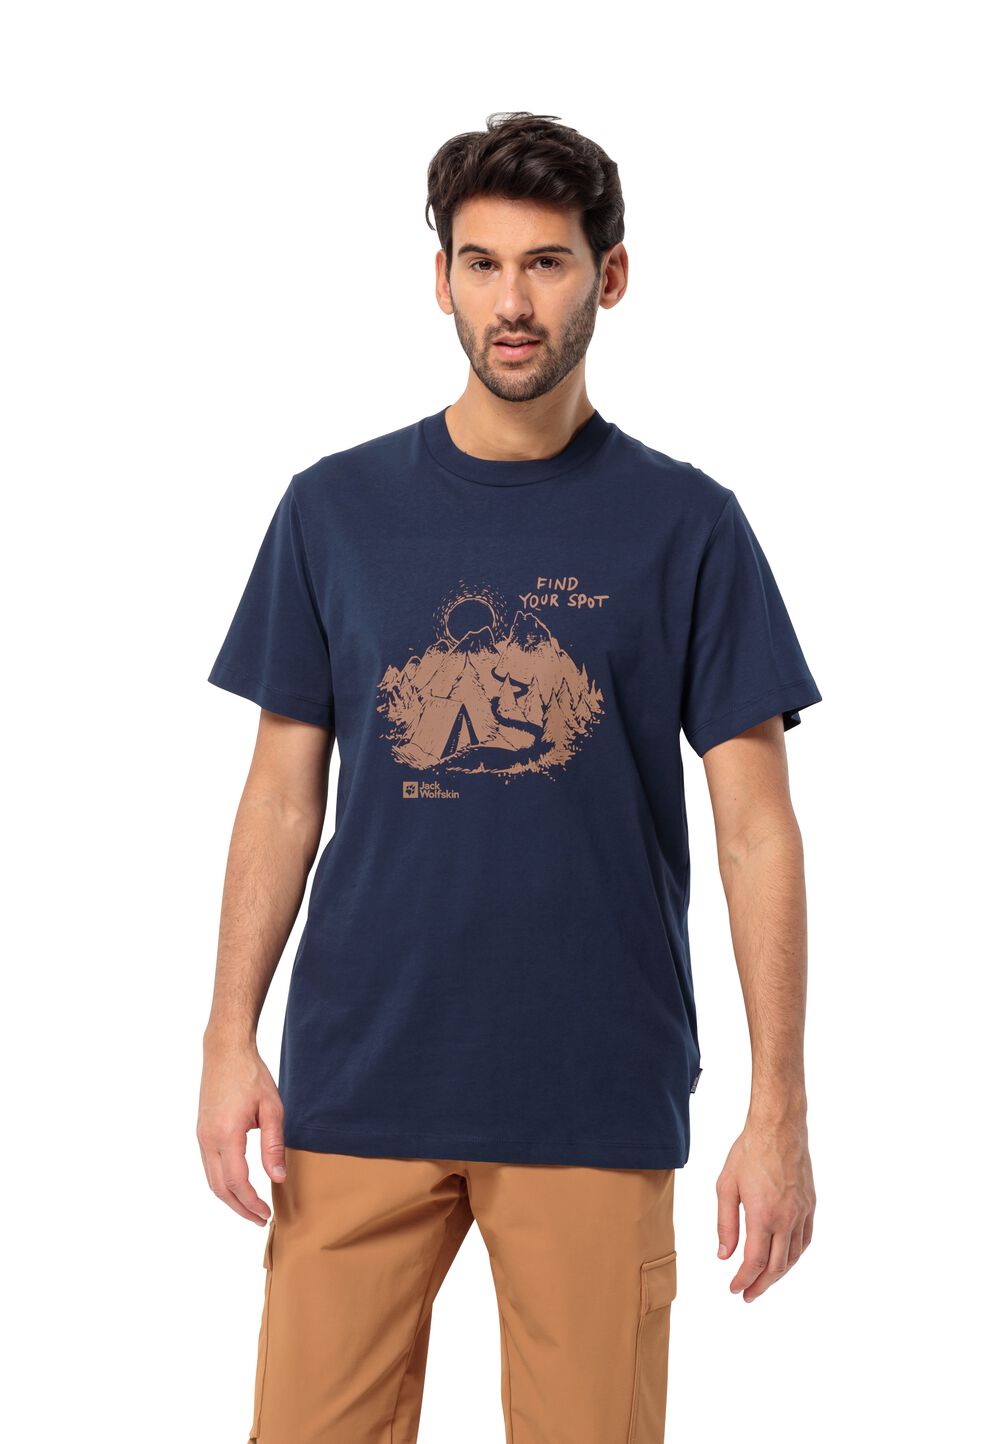 Jack Wolfskin T-Shirt aus Bio-Baumwolle Herren Find Your Spot T-Shirt Men S blau night blue von Jack Wolfskin